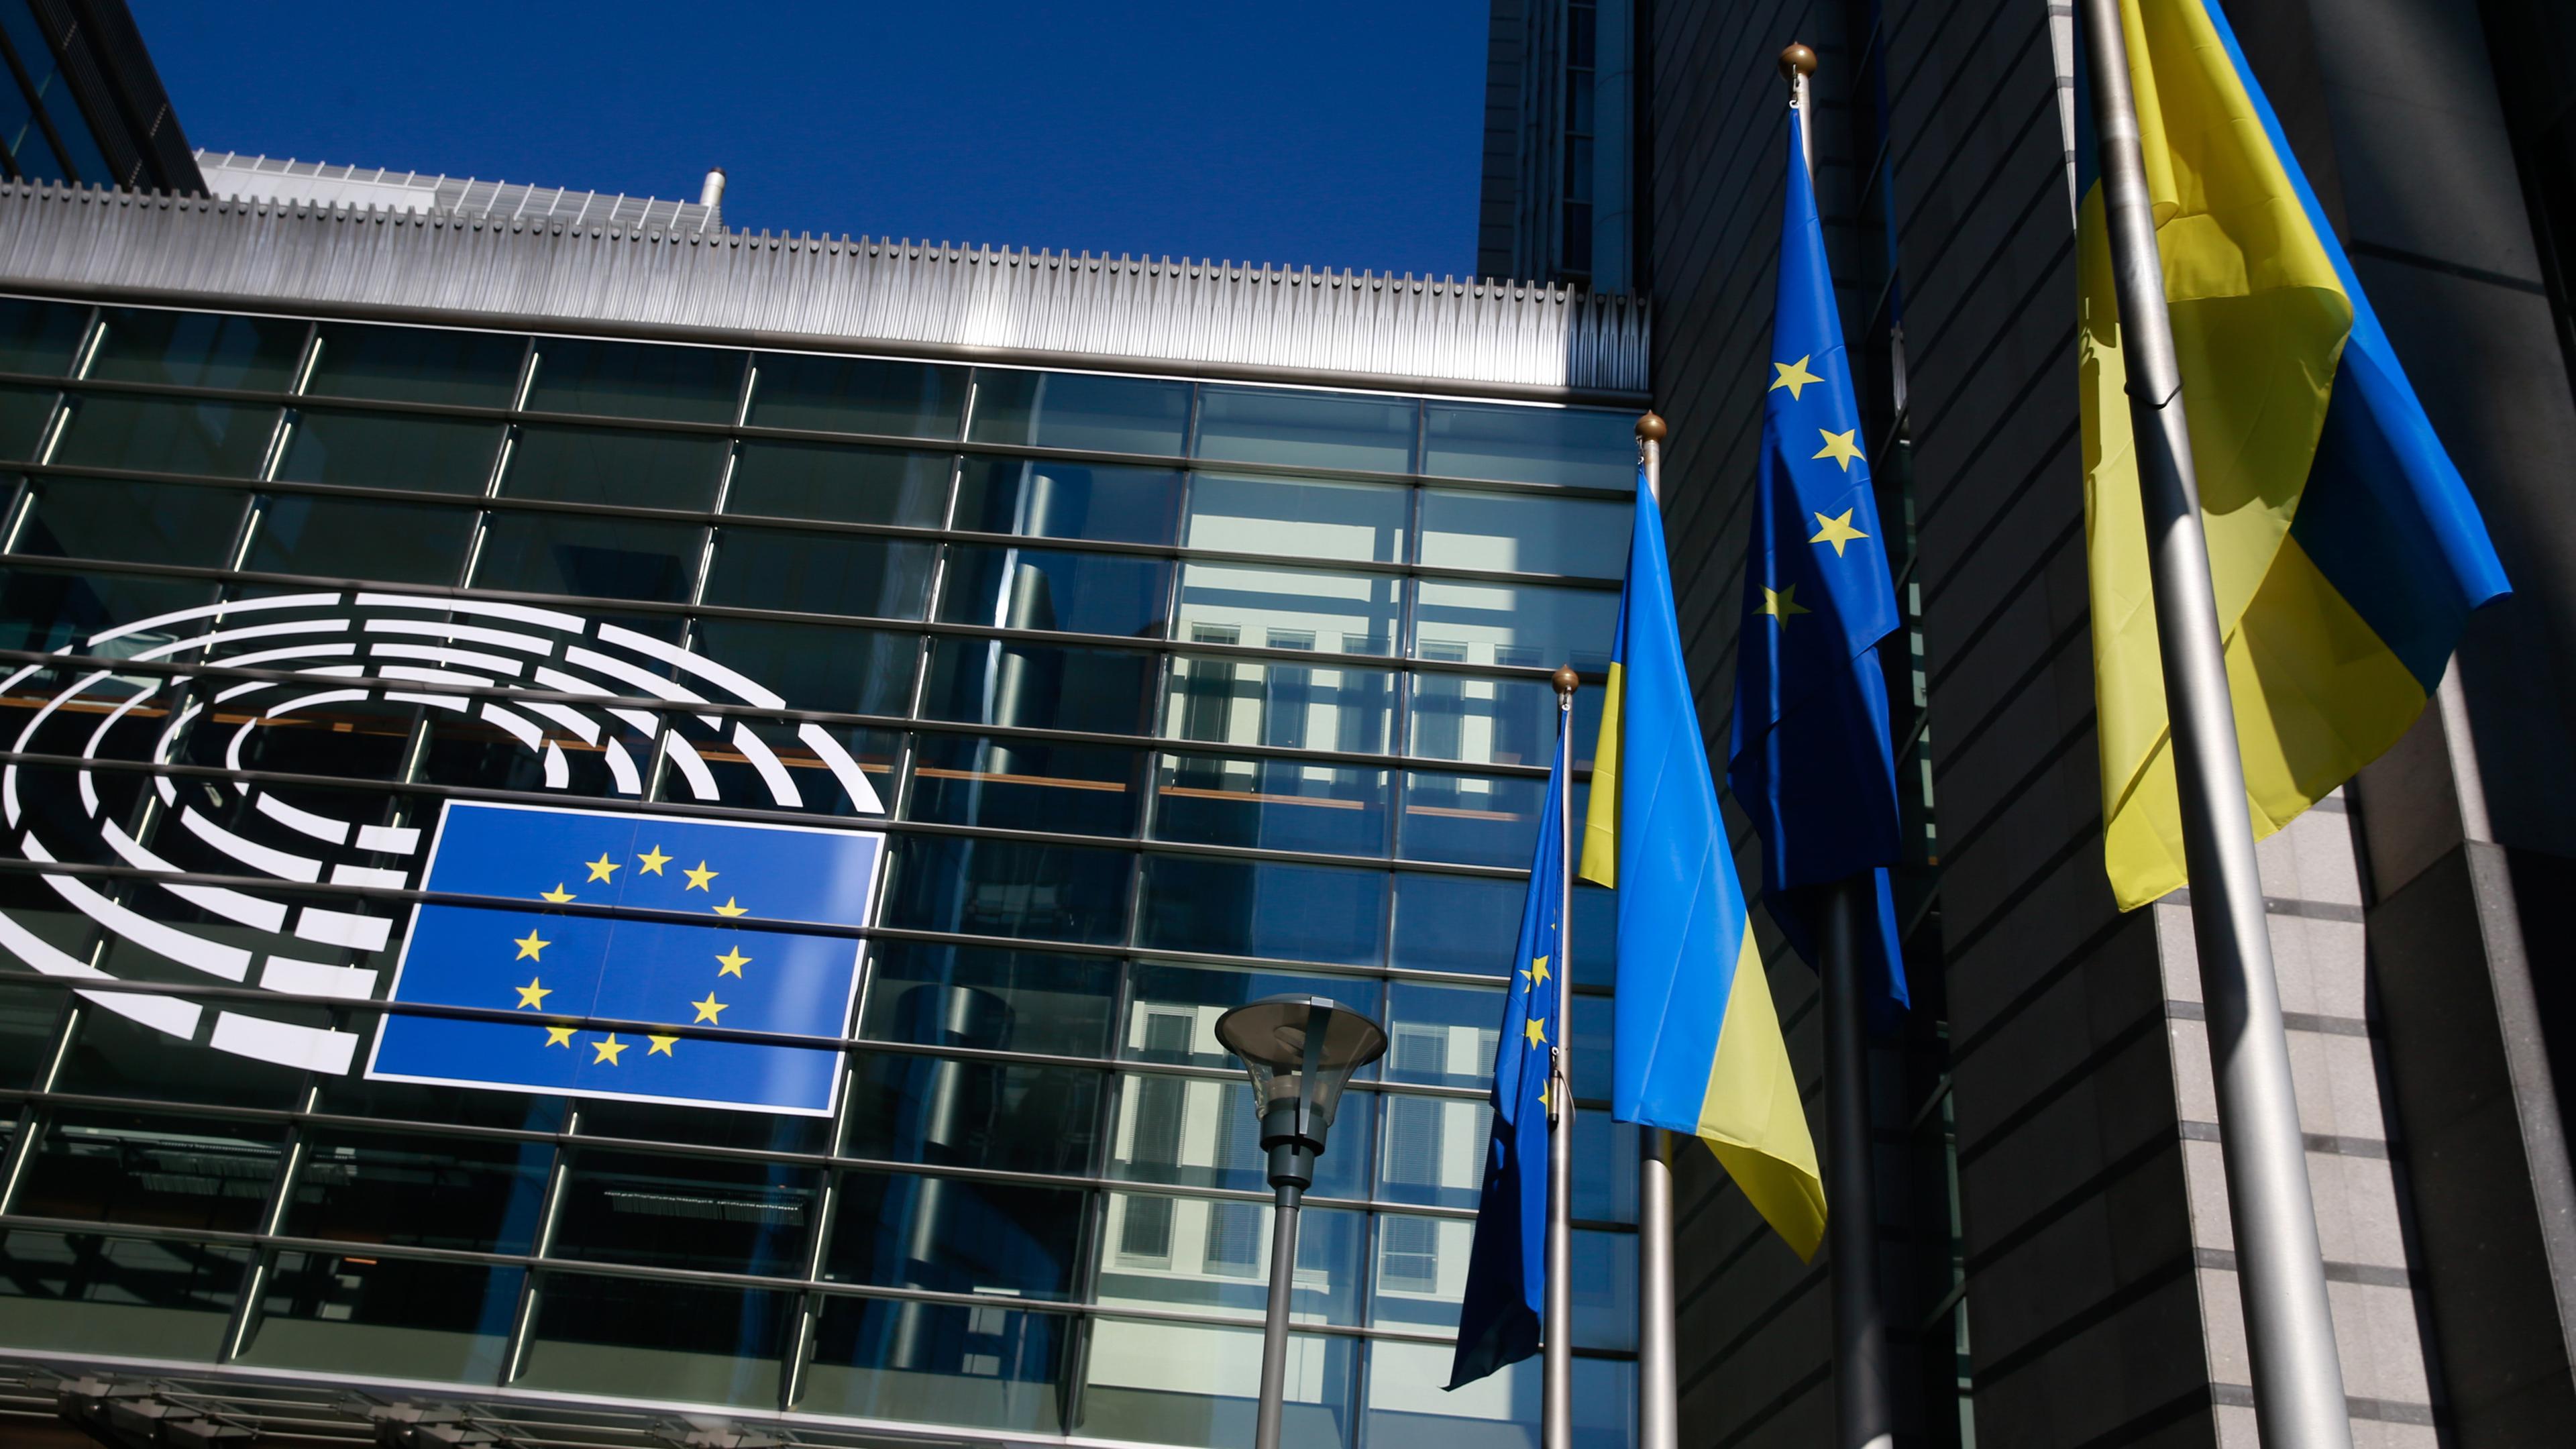 Ukrainische und EU-Flaggen vor dem Europäischen Parlament